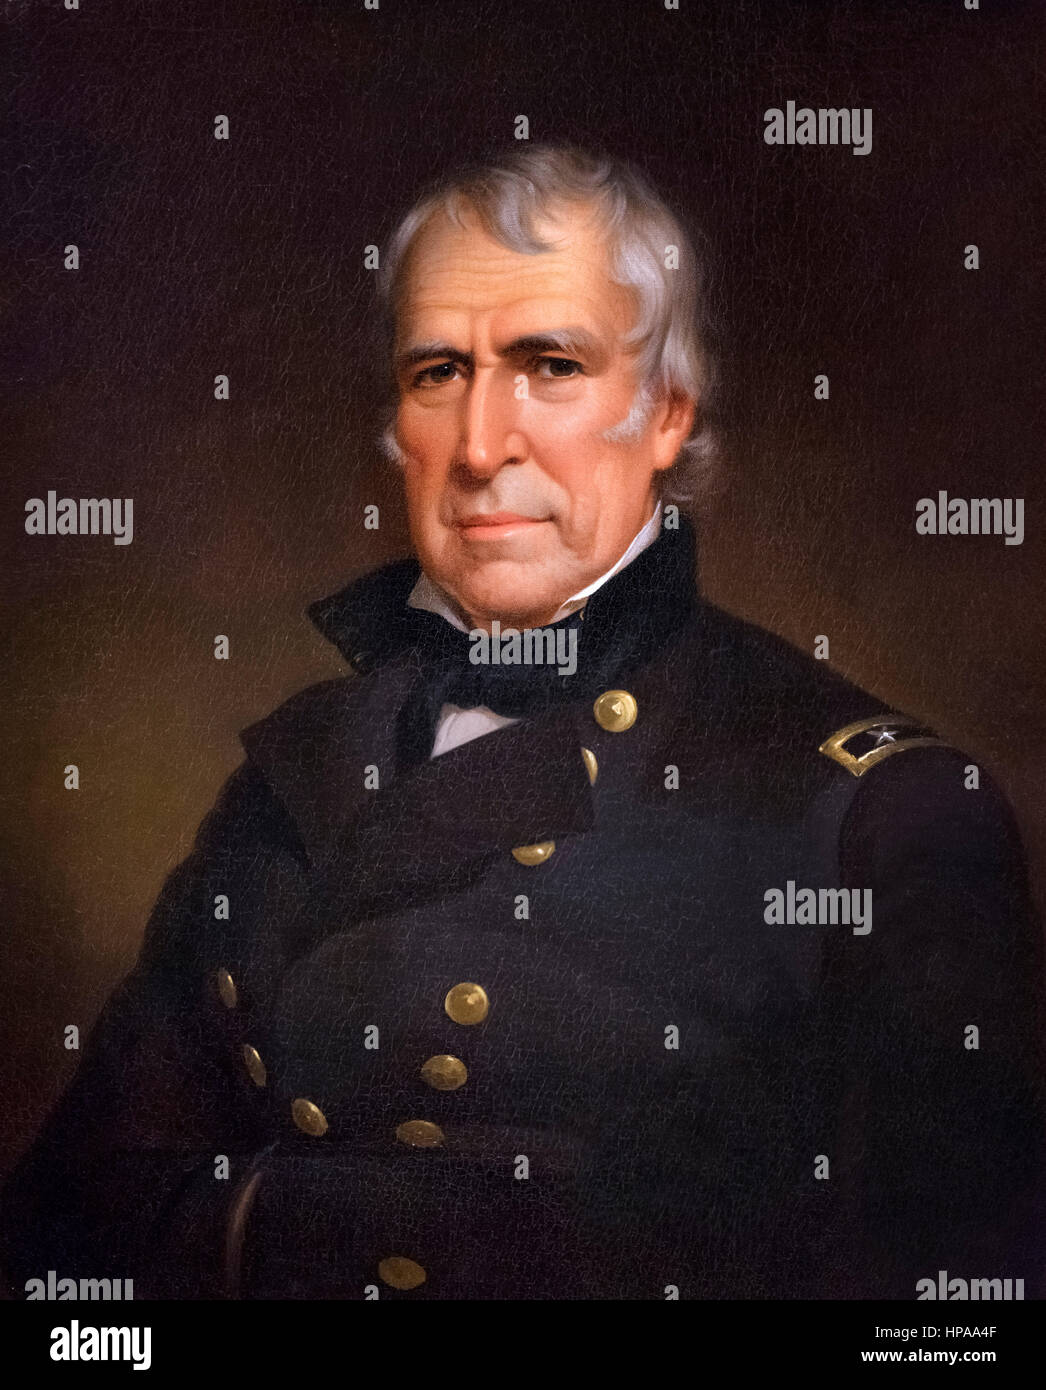 Zachary Taylor. Porträt von der 12. US-Präsident Zachary Taylor (1784-1850) von James Reid Lambdin, Öl auf Leinwand, 1848 Stockfoto